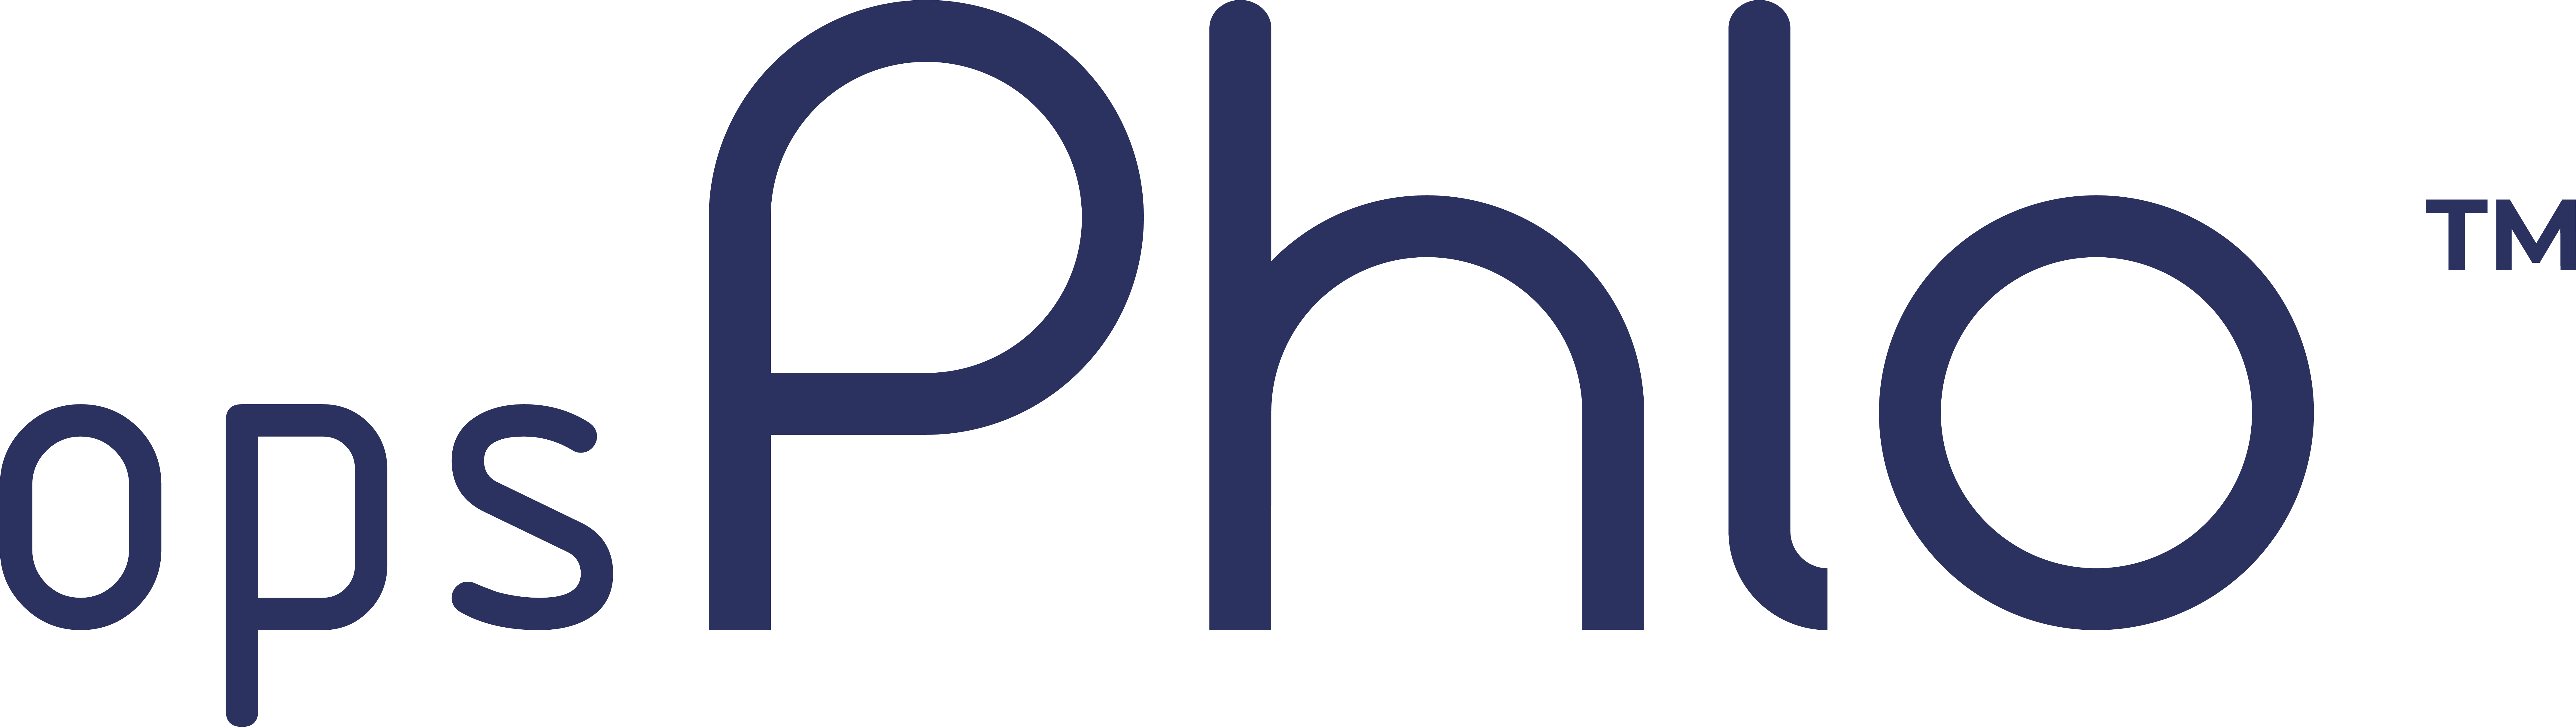 Phlo Systems Limited - opsPhlo - Logiciel de gestion des risques et du commerce des matières premières avec ERP